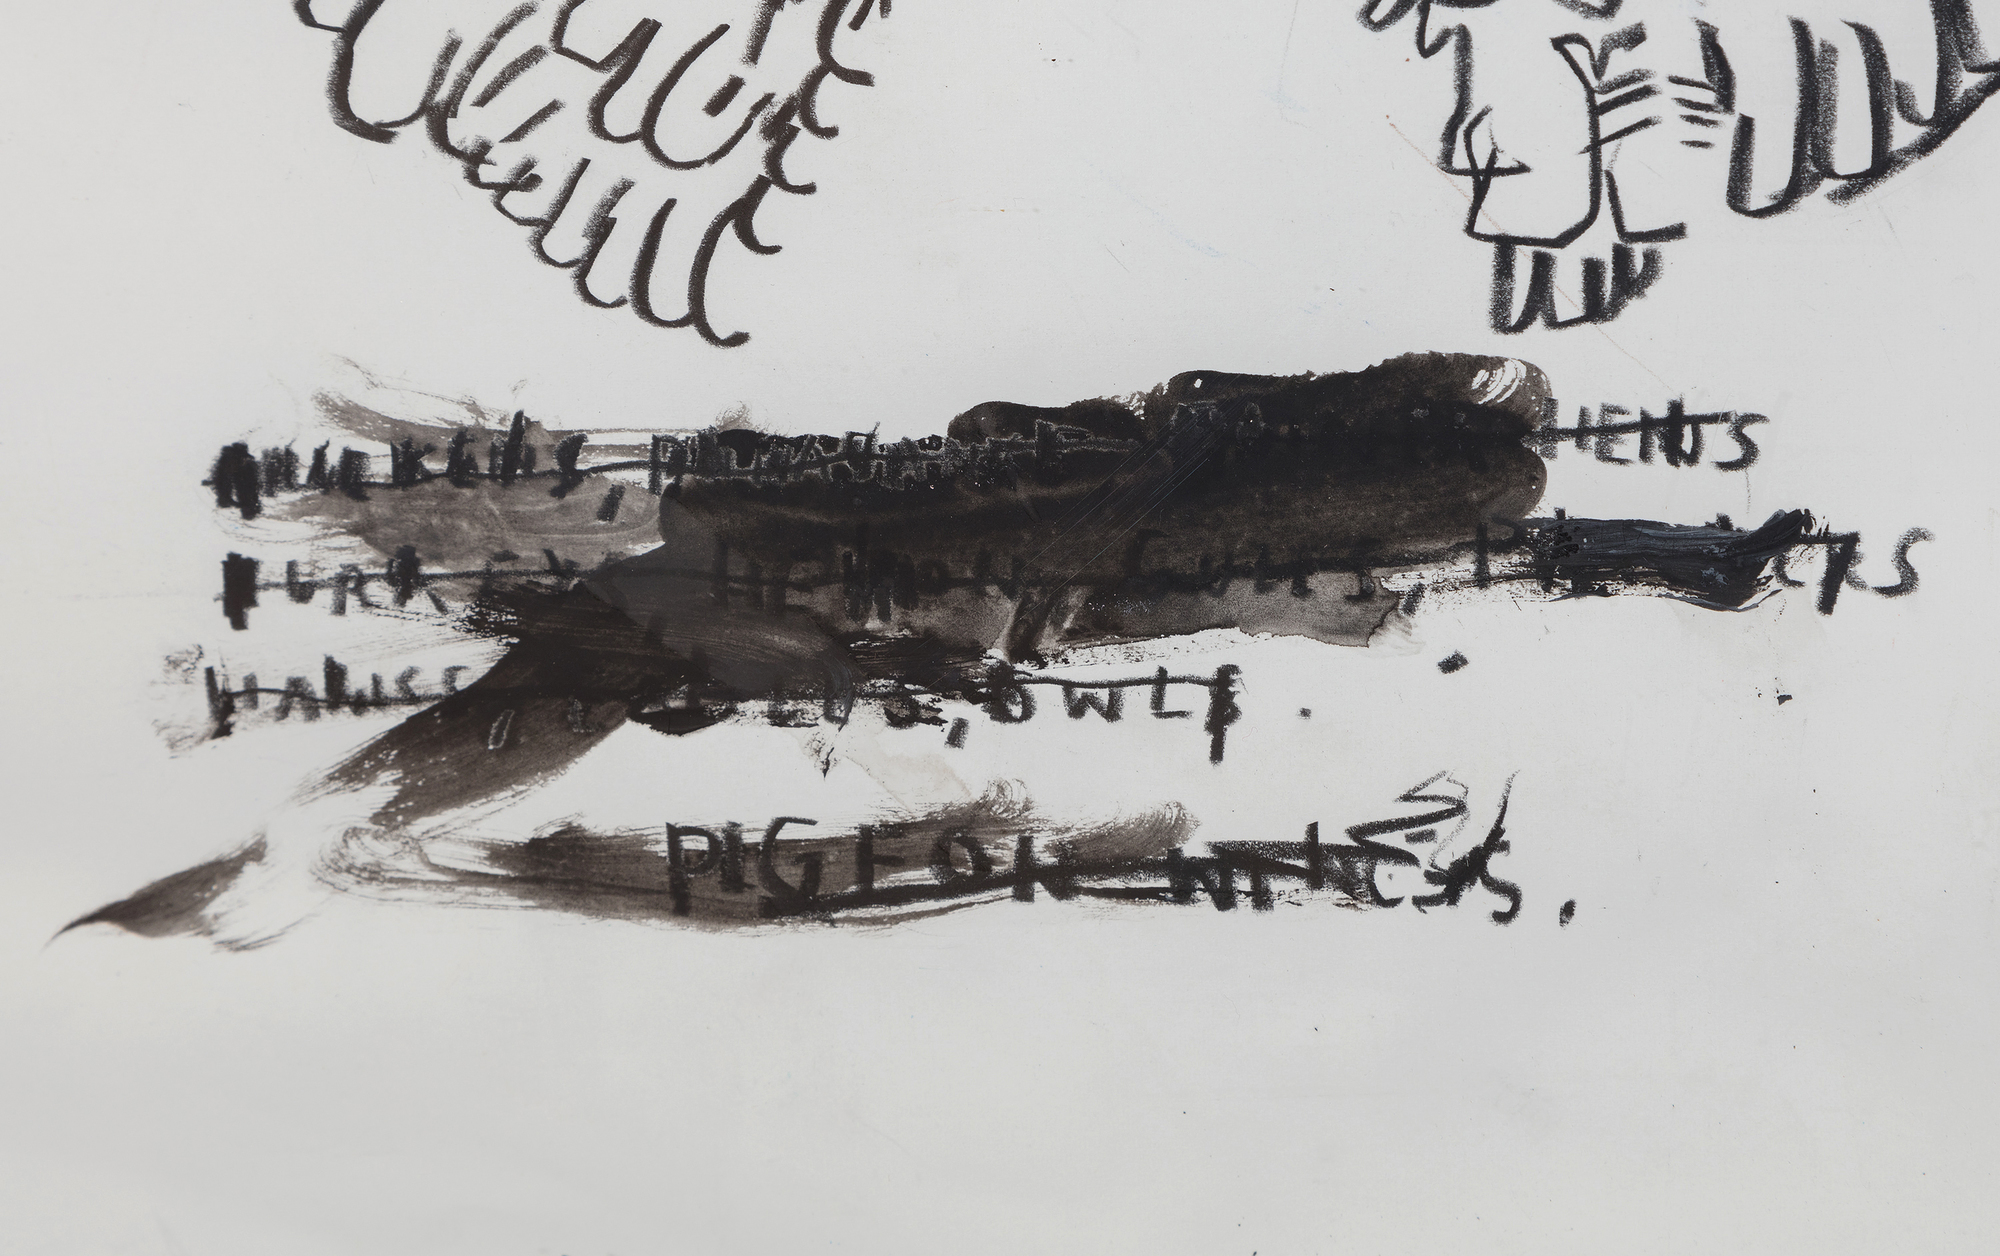 جان ميشيل باسكيات - بدون عنوان (تشريح الحمام) - زيت وجرافيت وطباشير على ورق - 22 × 30 بوصة.